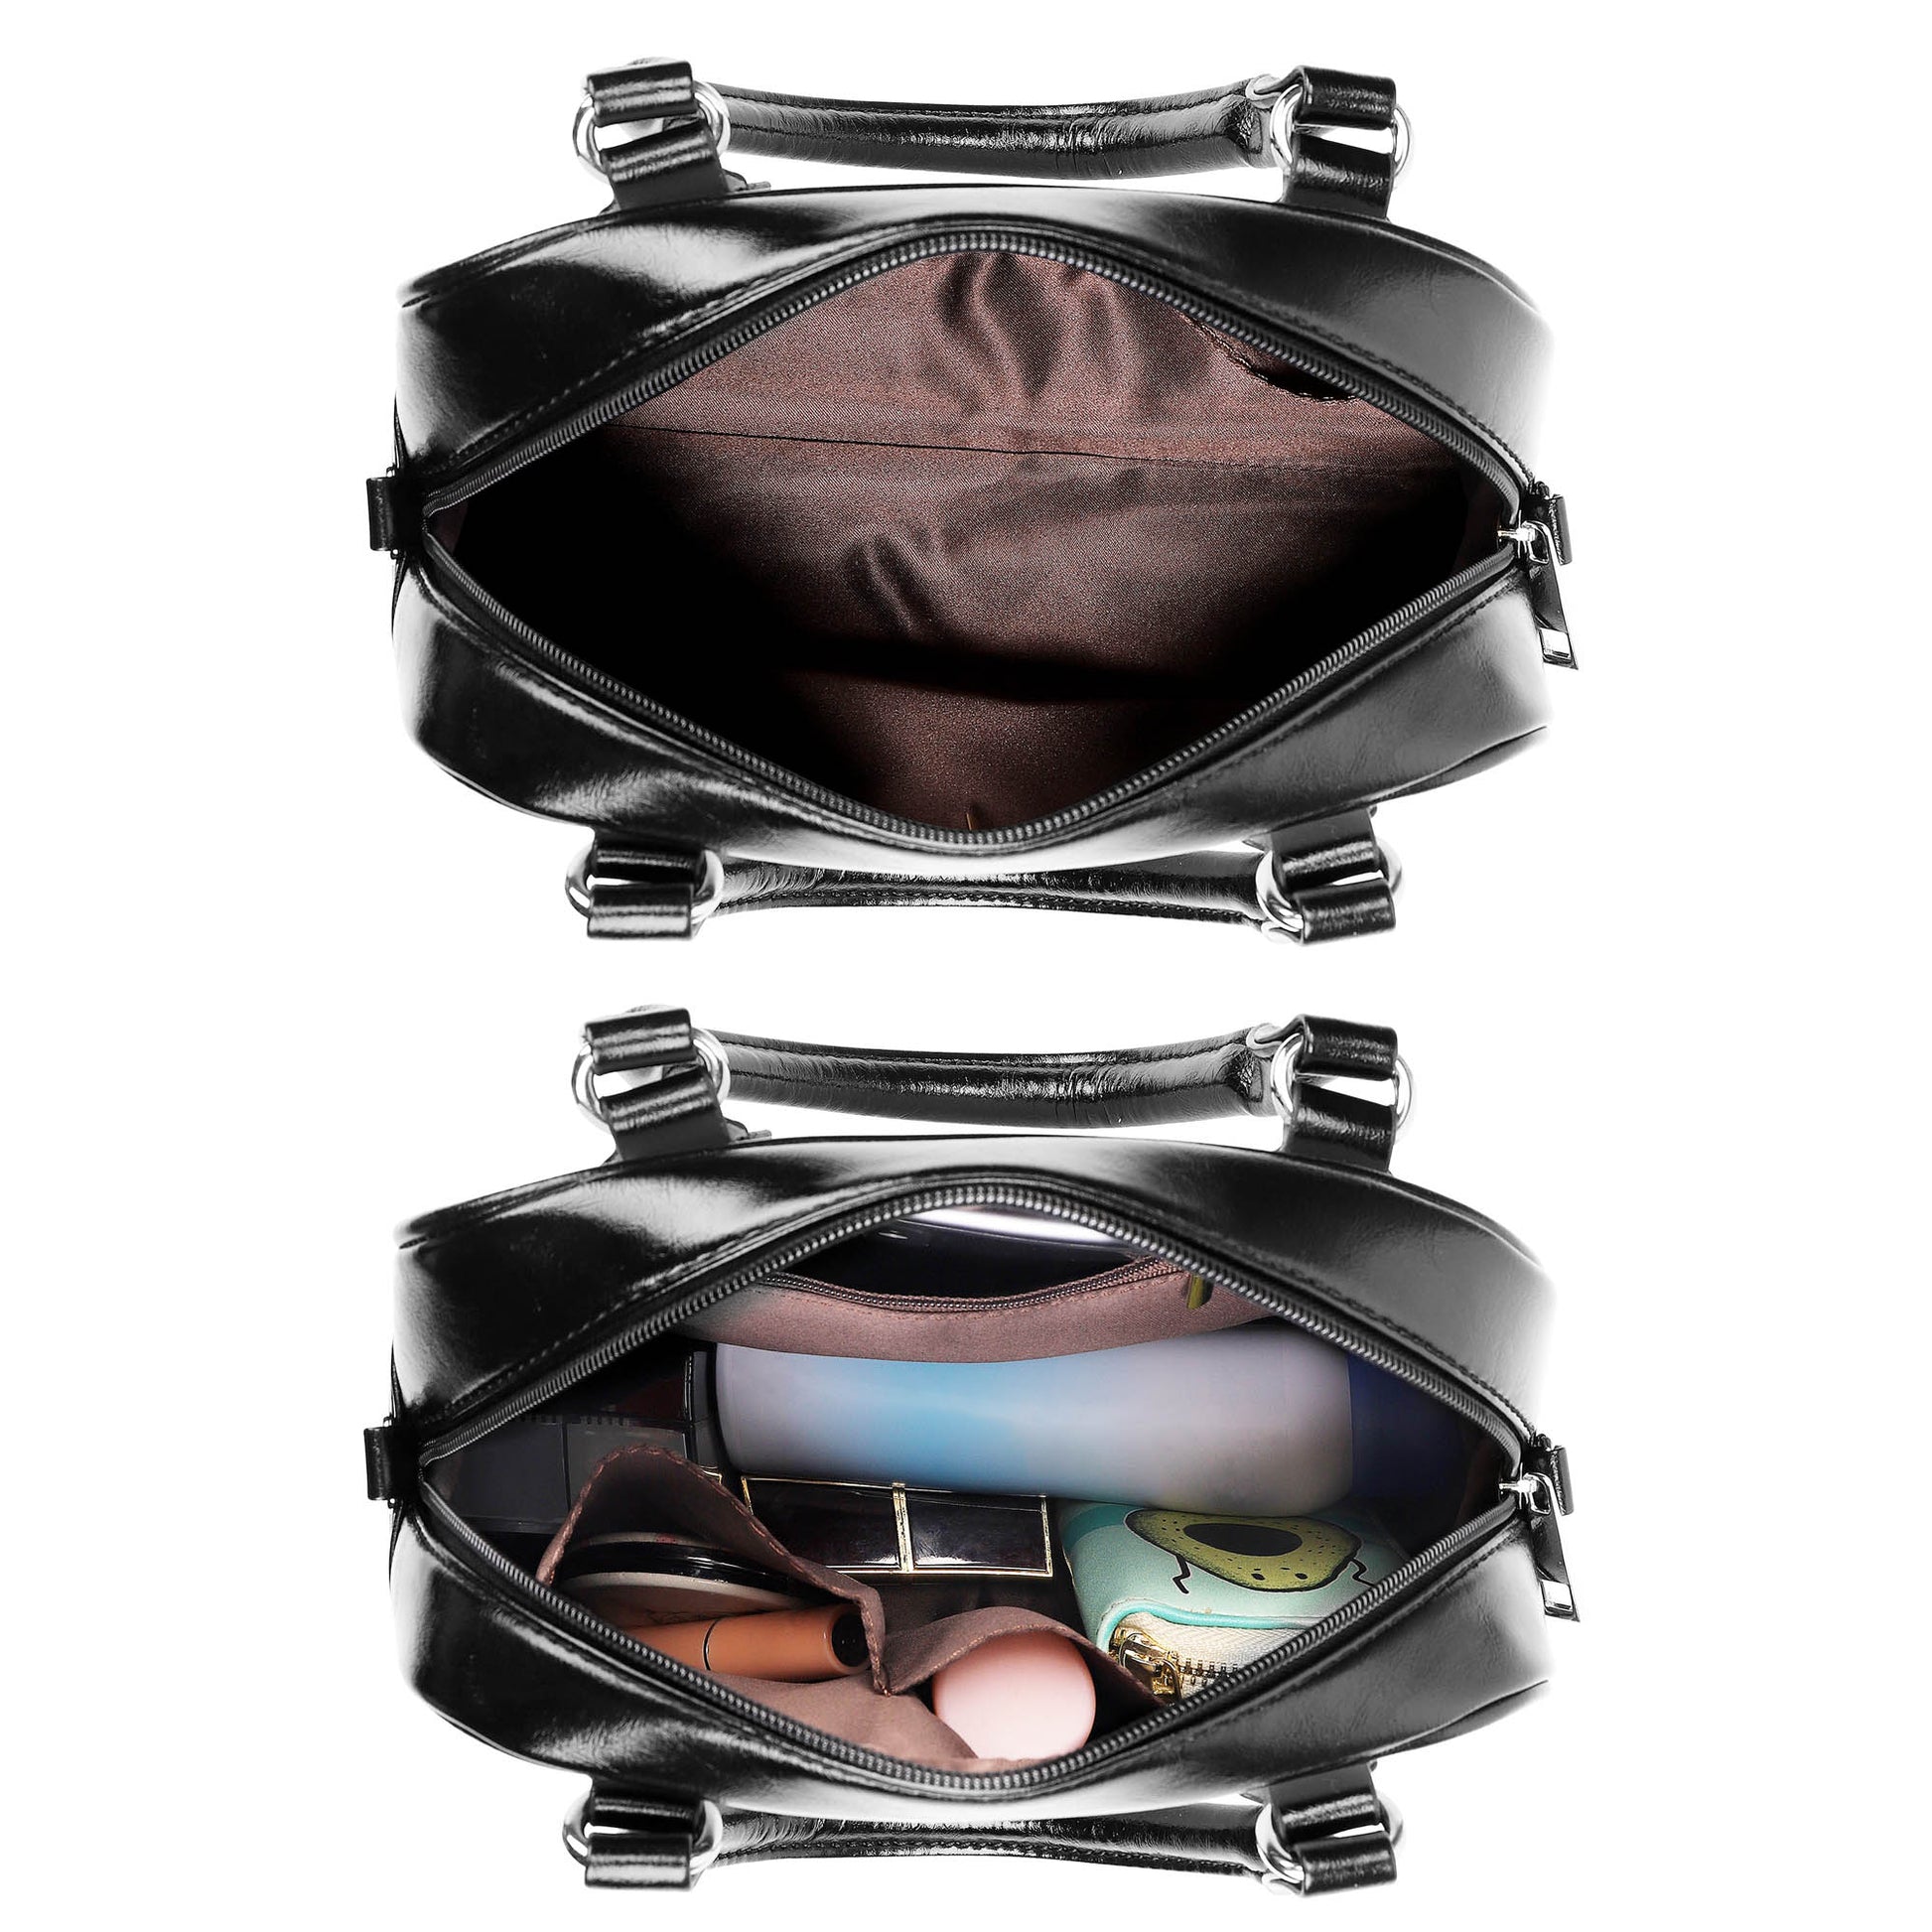 MacGillivray Modern Tartan Shoulder Handbags - Tartanvibesclothing